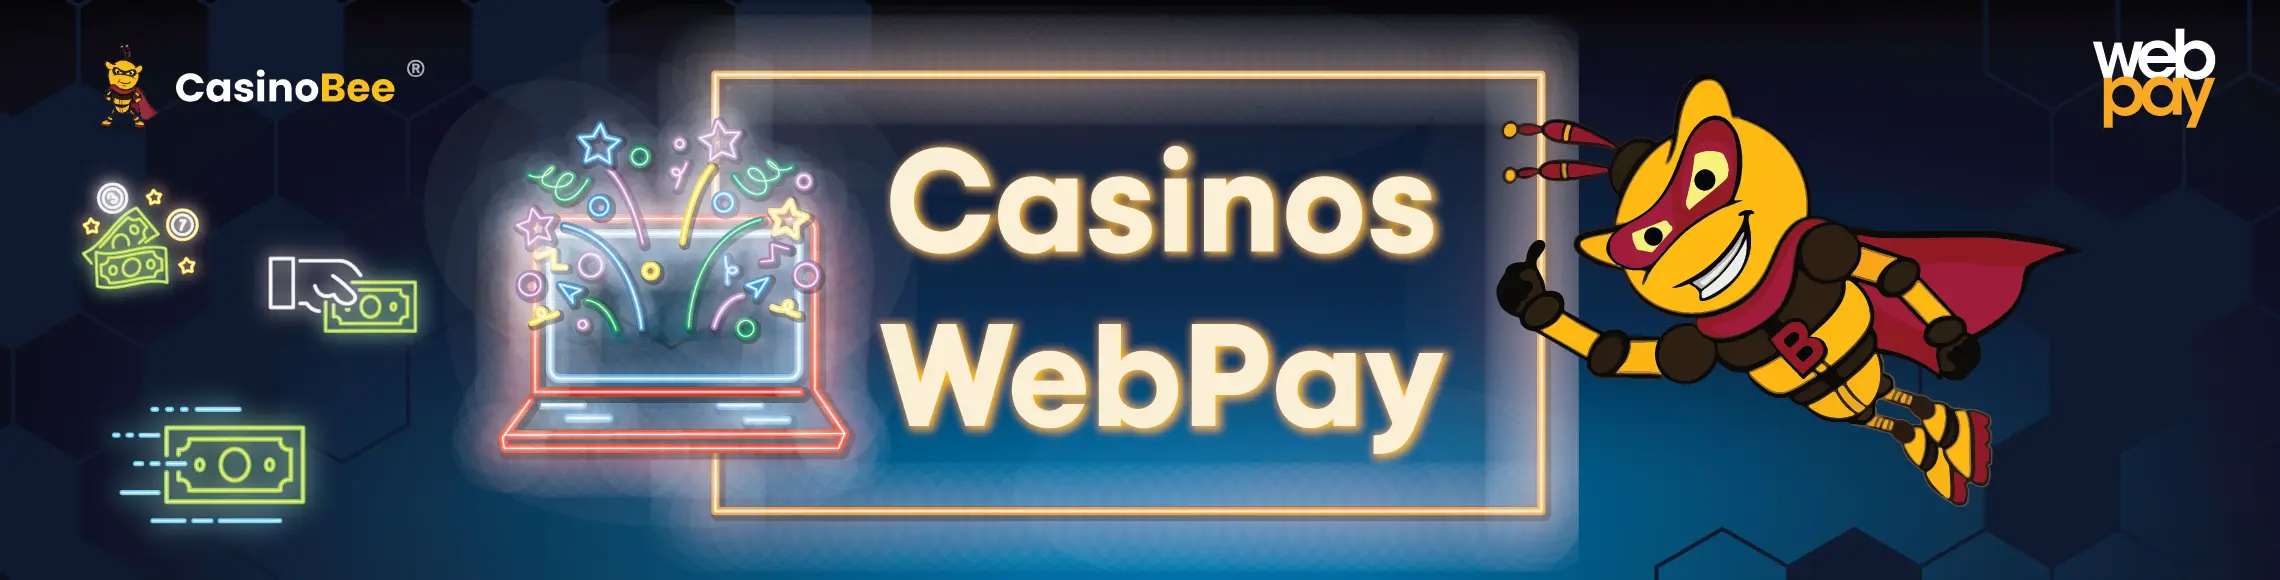 Depósitos y retiros en los casinos WebPay
